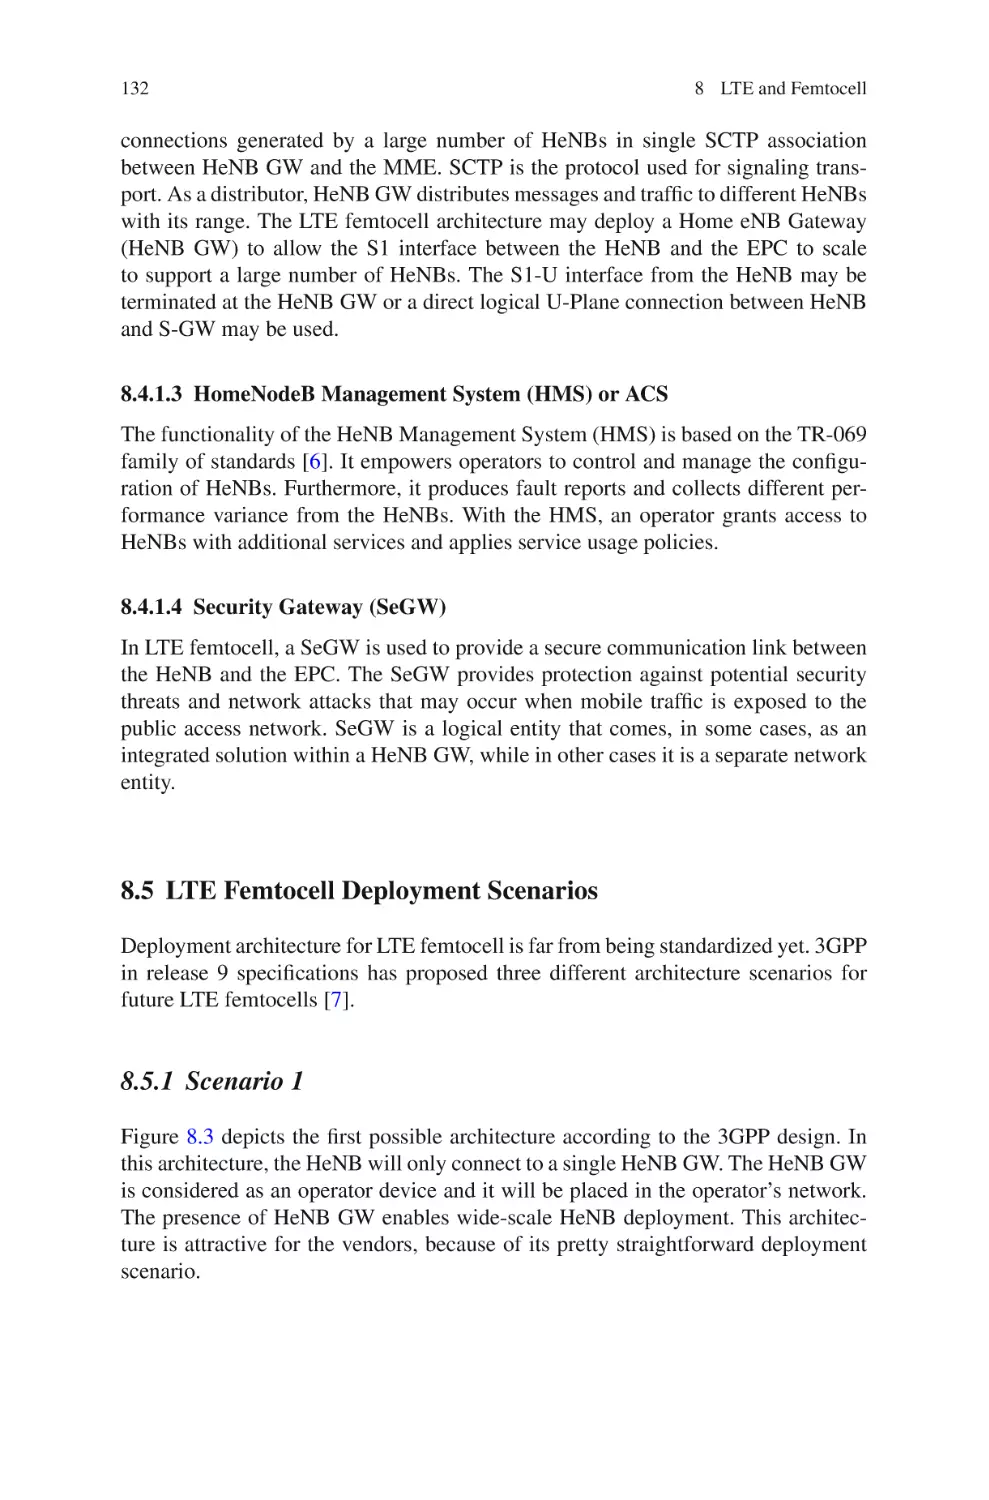 8.5  LTE Femtocell Deployment Scenarios
8.5.1  Scenario 1